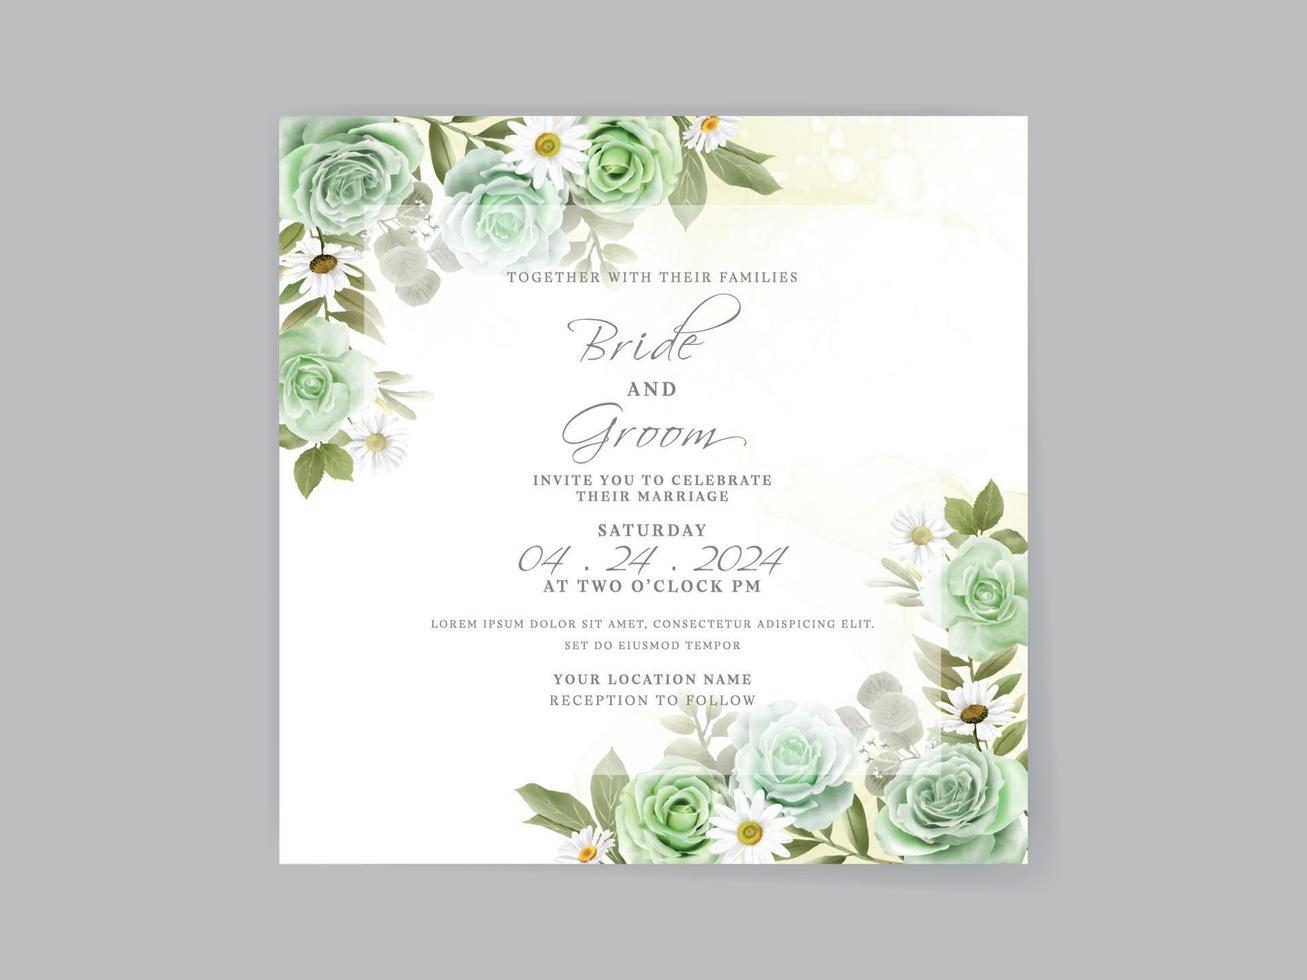 tarjeta de invitación de boda de rosas verdes dibujadas a mano vector